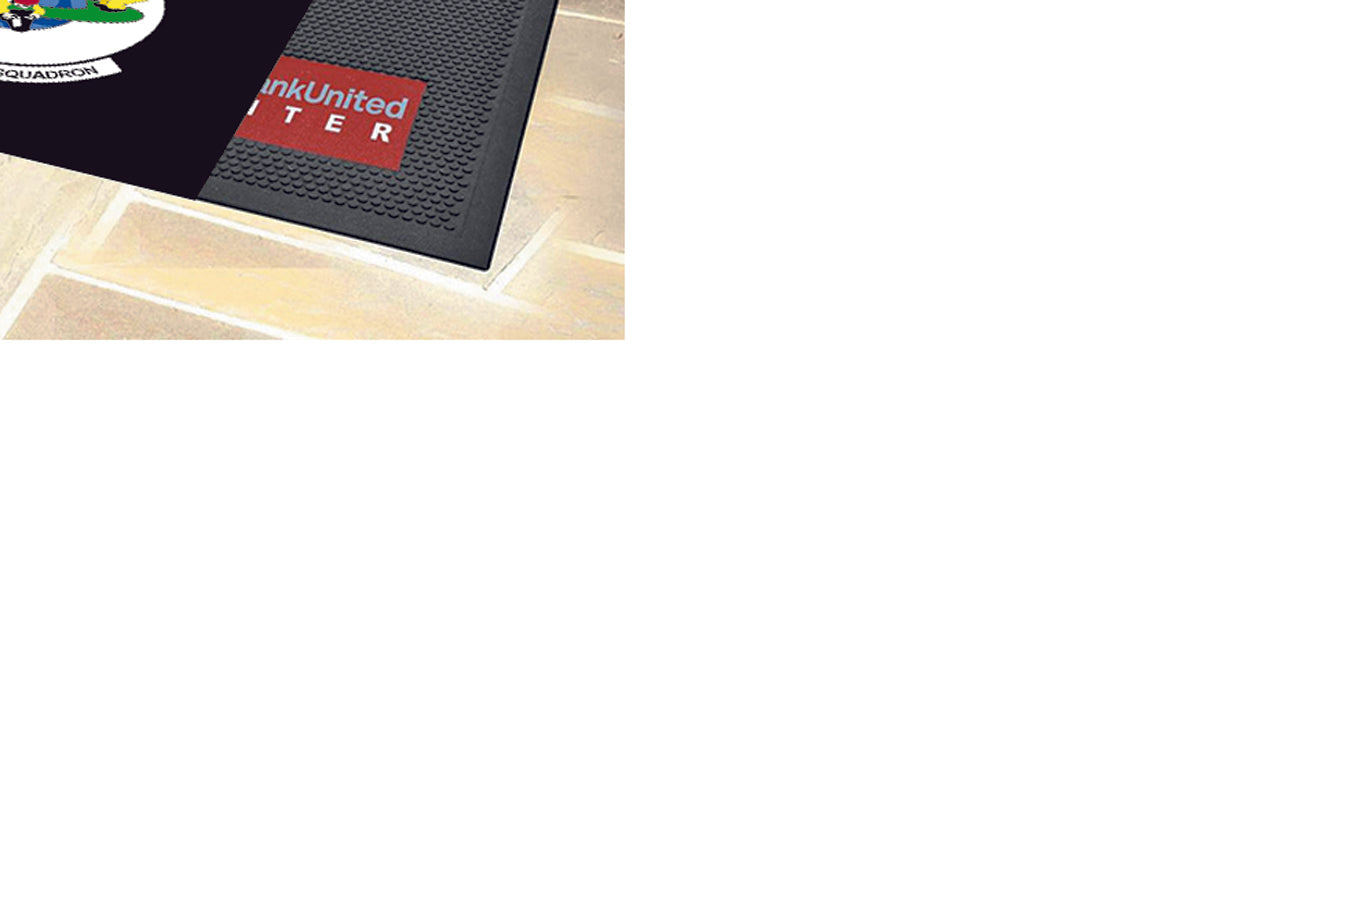 36TH INTELLIGENCE SQUADRON 6 X 6 Rubber Scraper - The Personalized Doormats Company